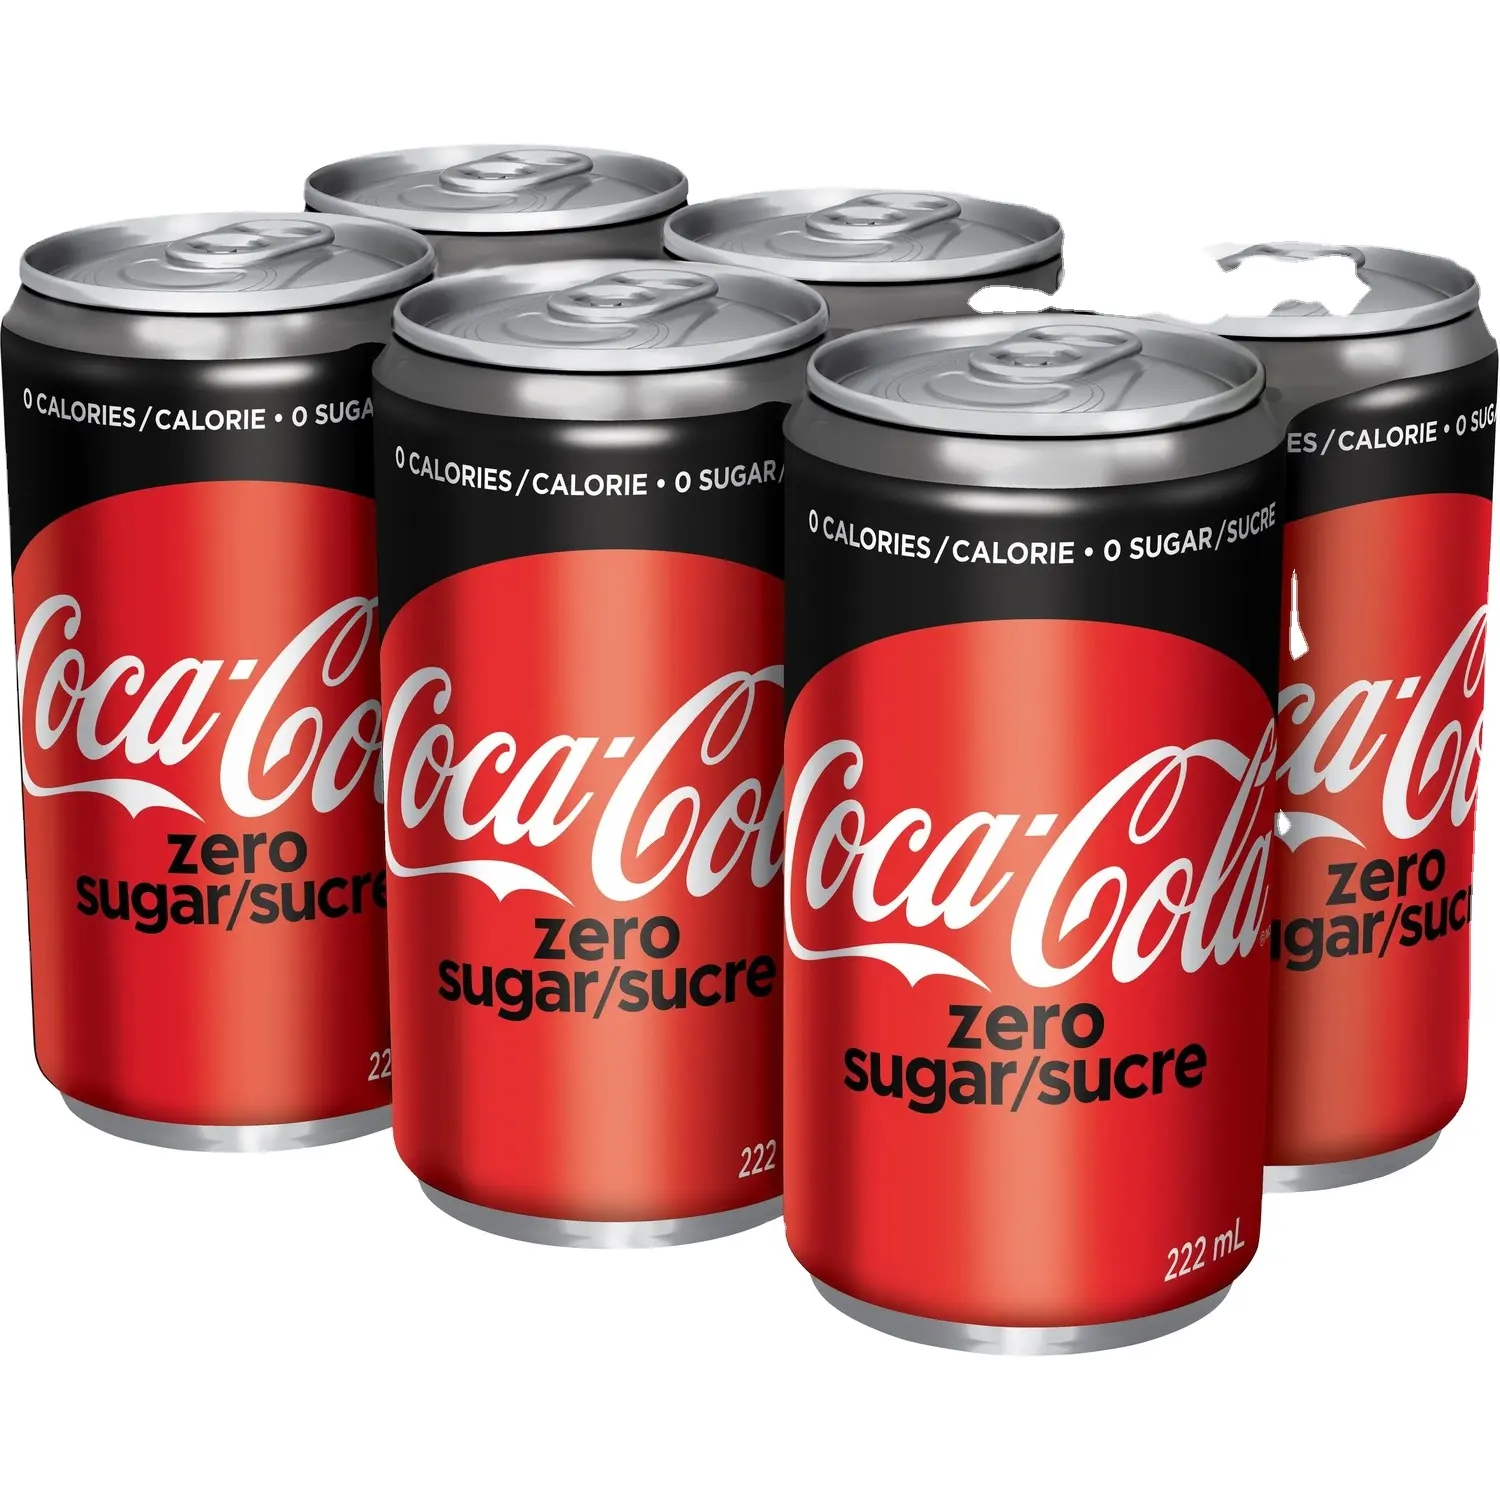 コカコーラソフトドリンク卸売業者: コカコーラ、ダイエットコーラ、コカコーラゼロ、